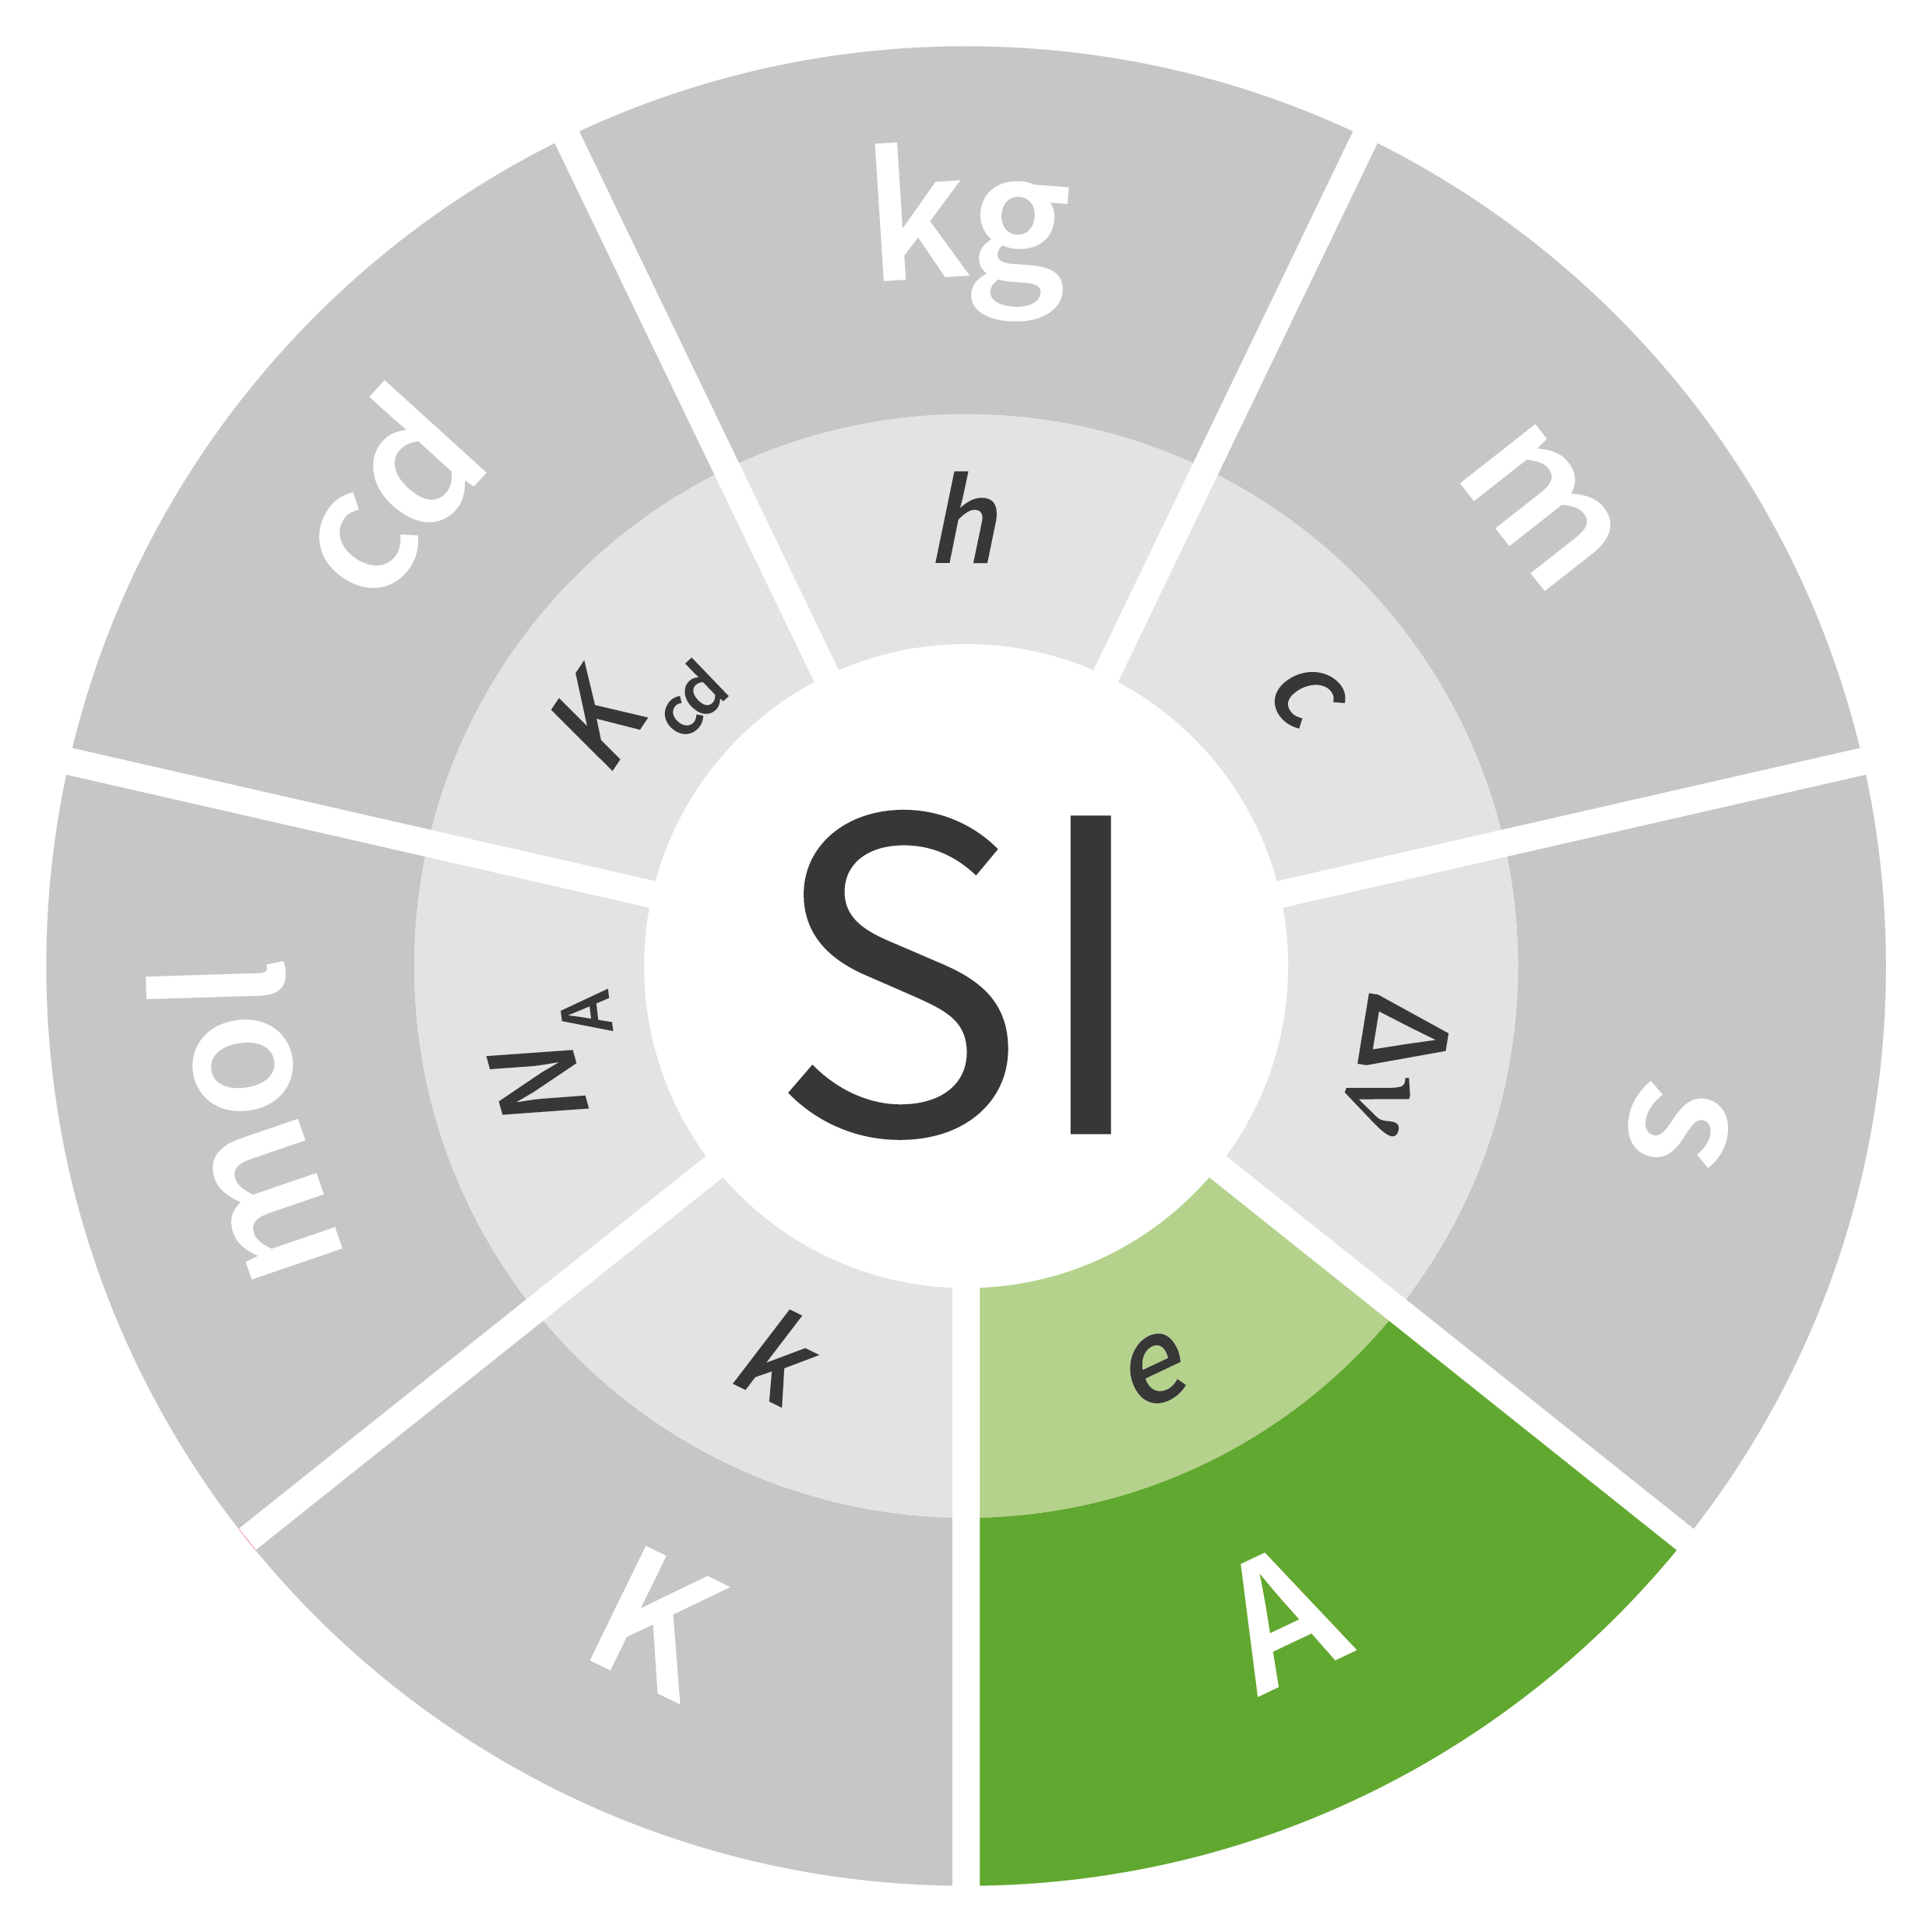  W logo SI w kształcie koła na zielono zaznaczony symbol ampera - a. Pozostałe jednostki miar wyszarzone. Pod nimi w kole symbole stałych definiujących.